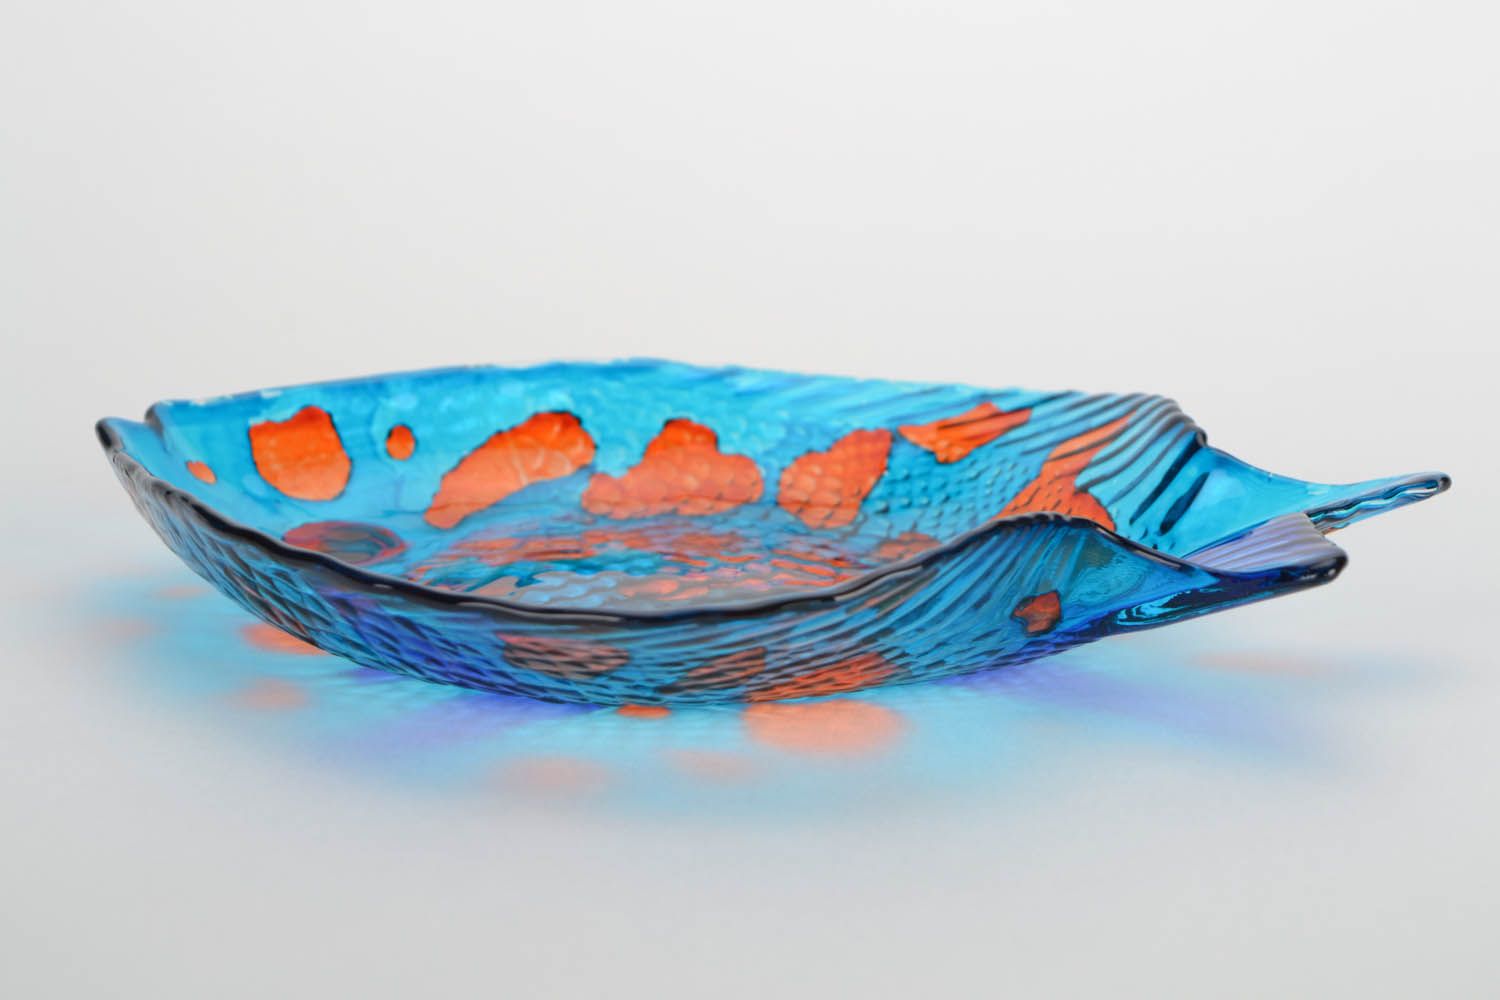 Fish-shaped glass dish photo 4